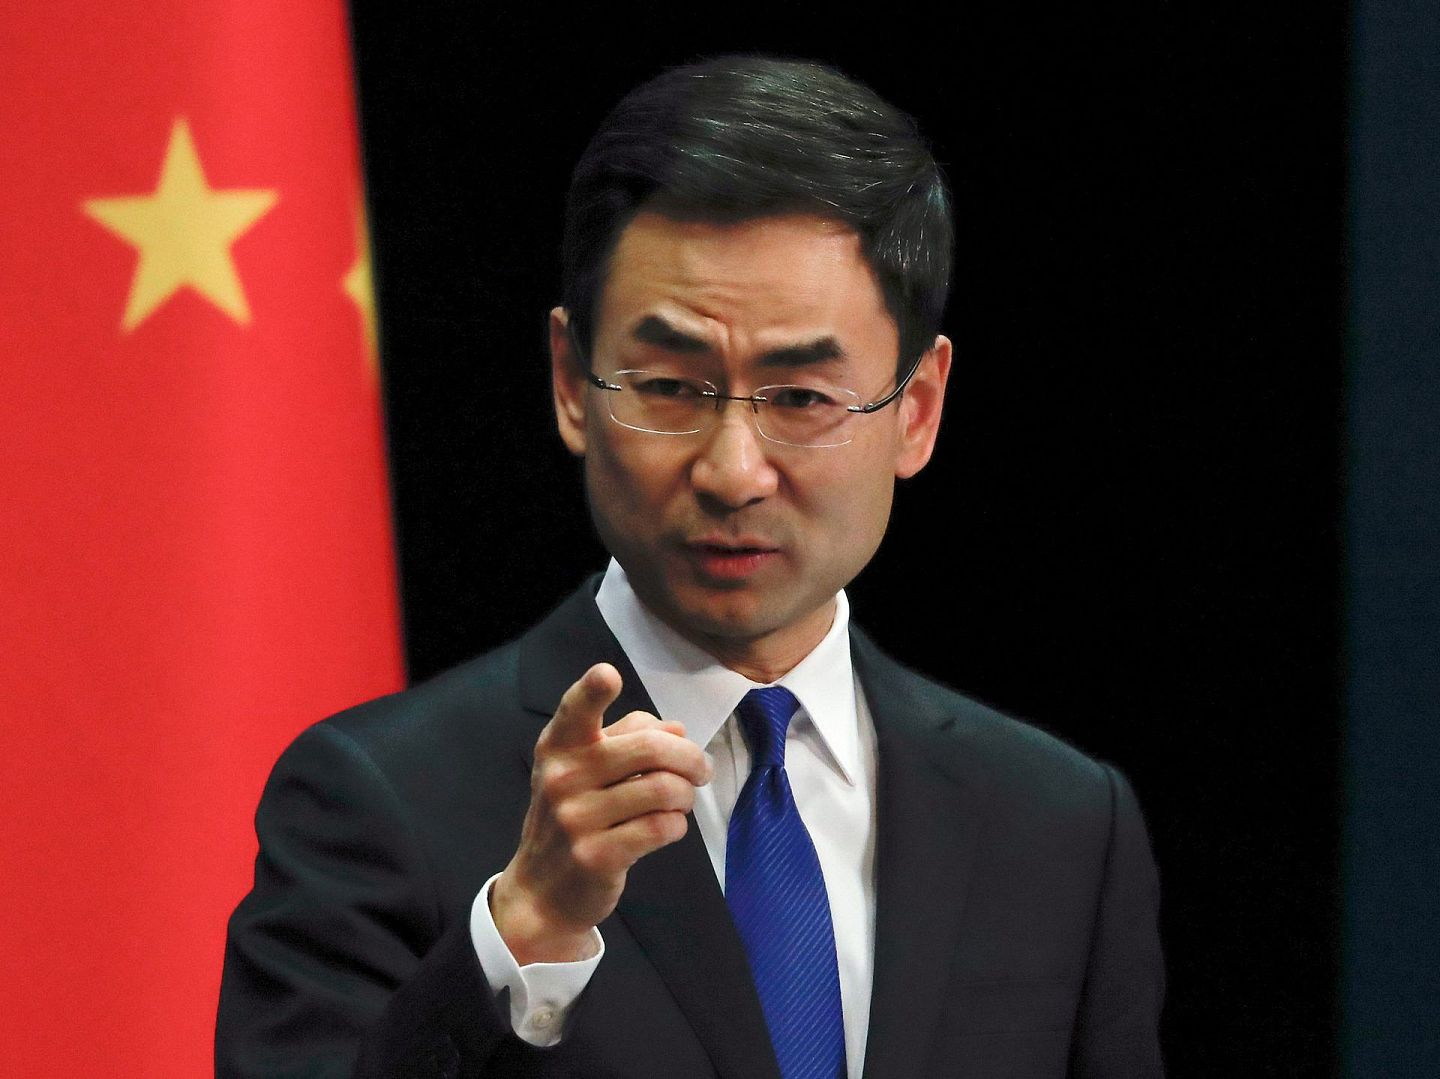 中国外交部前发言人耿爽7月7日正式履职中国常驻联合国副代表。